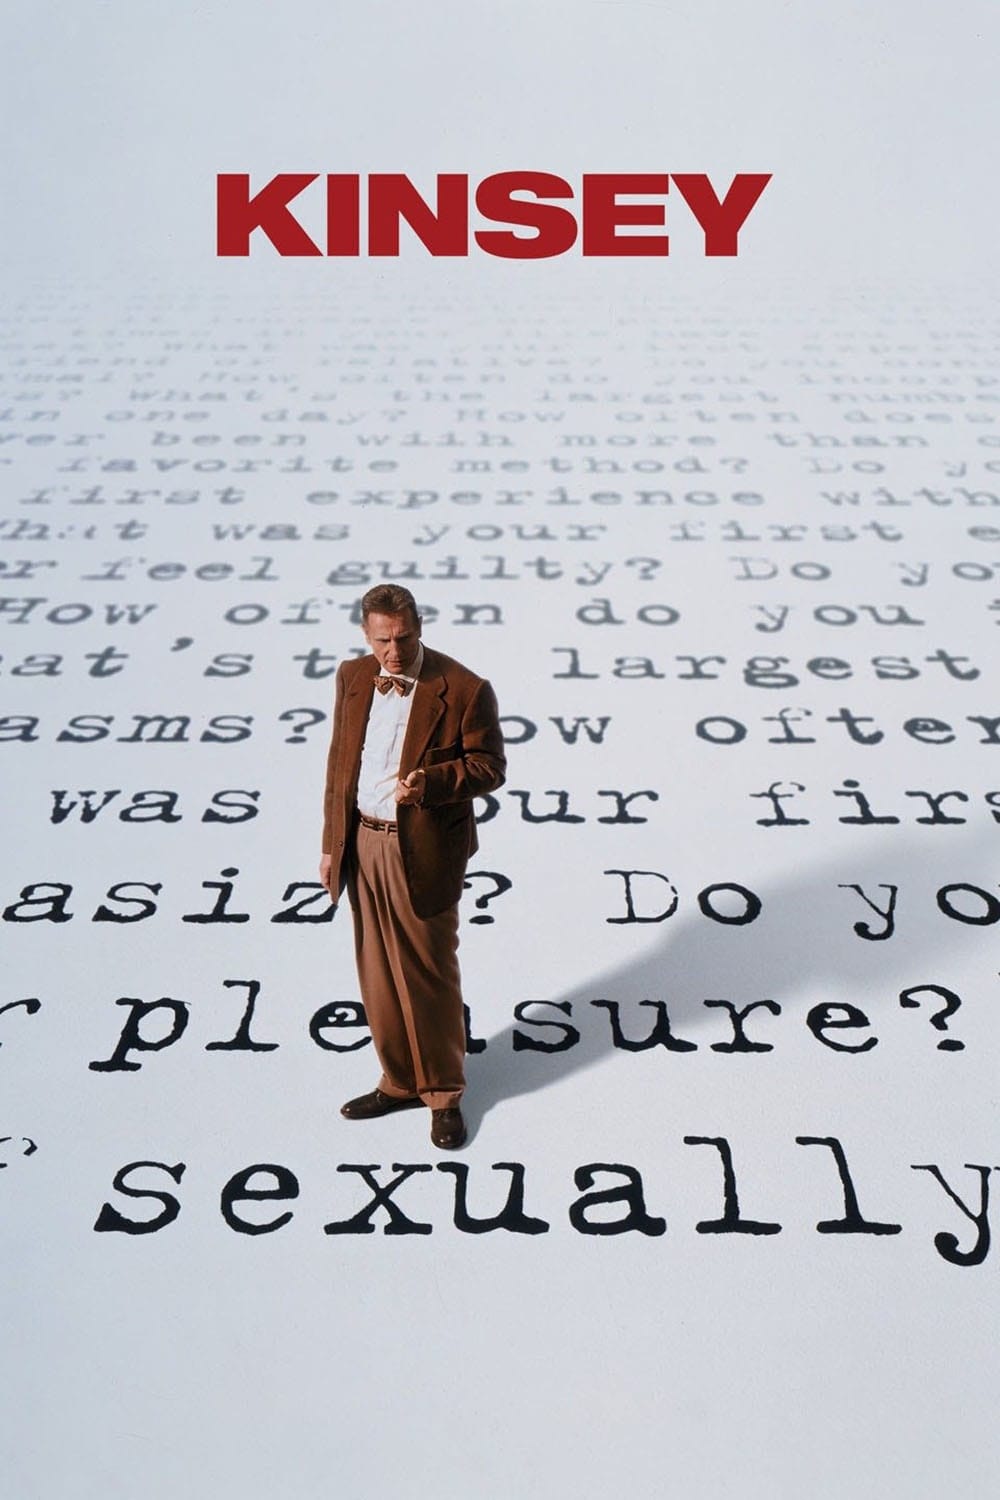 Kinsey - Die Wahrheit über Sex (2004)